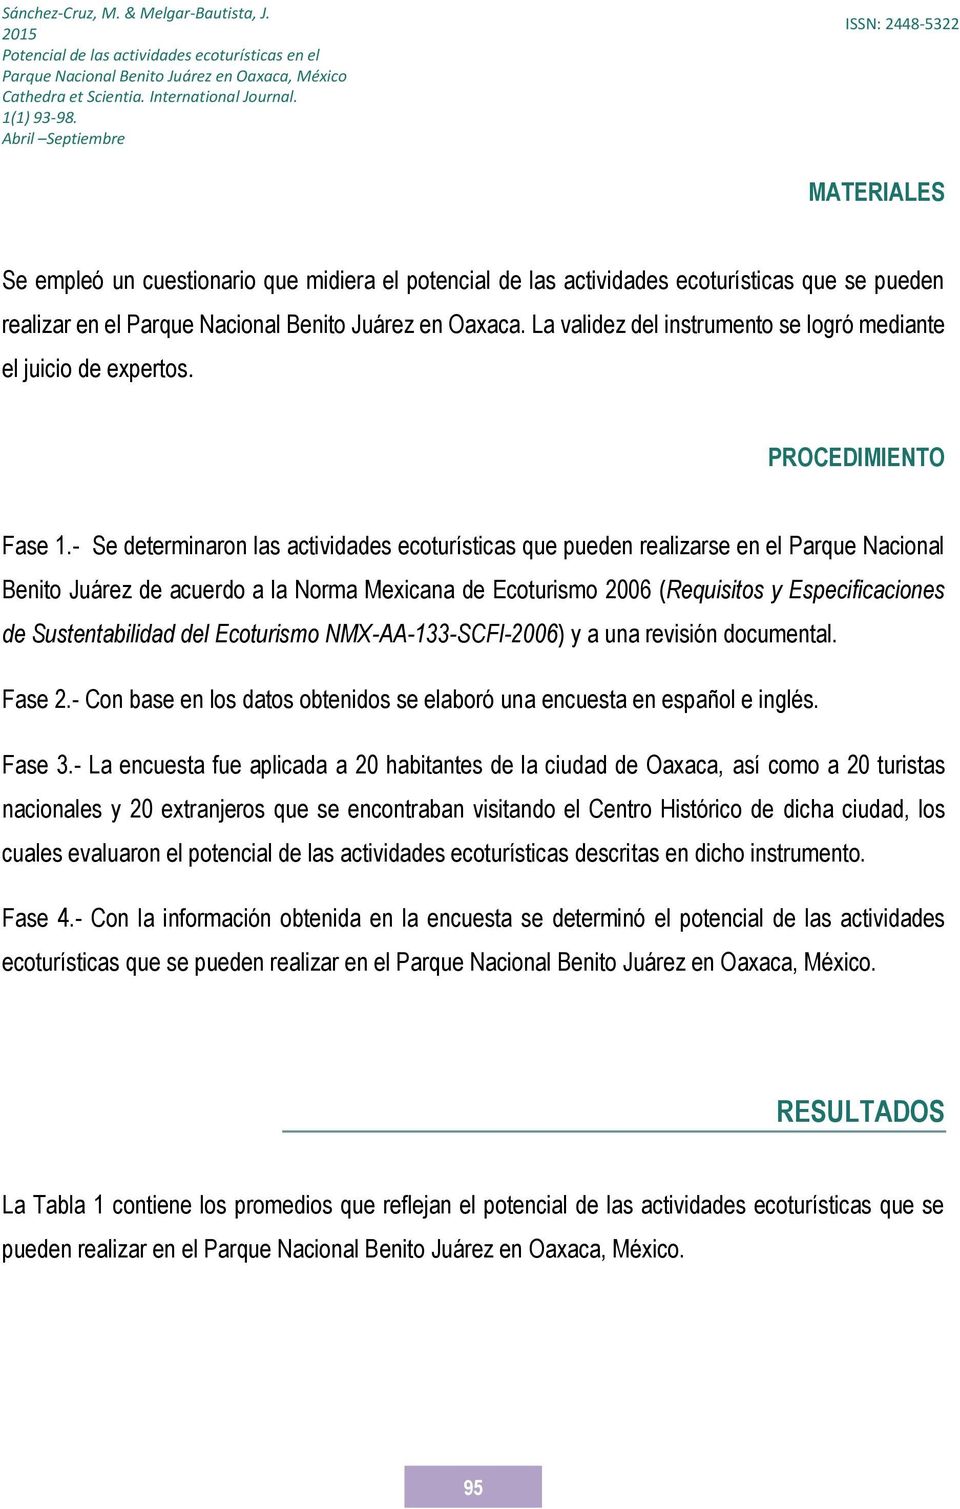 - Se determinaron las actividades ecoturísticas que pueden realizarse en el Parque Nacional Benito Juárez de acuerdo a la Norma Mexicana de Ecoturismo 2006 (Requisitos y Especificaciones de